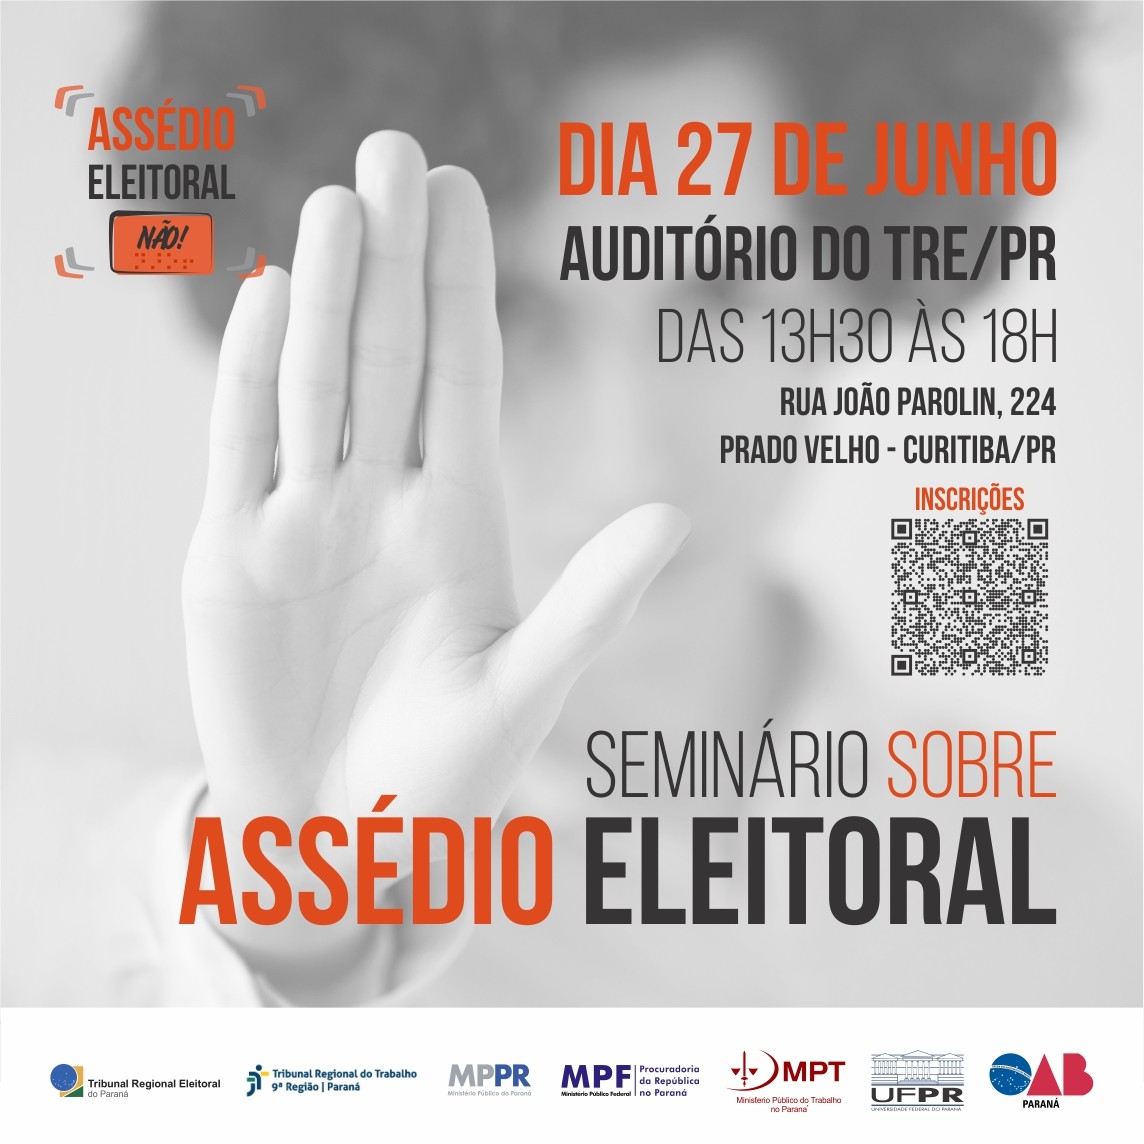 Assédio eleitoral é tema de seminário em Curitiba